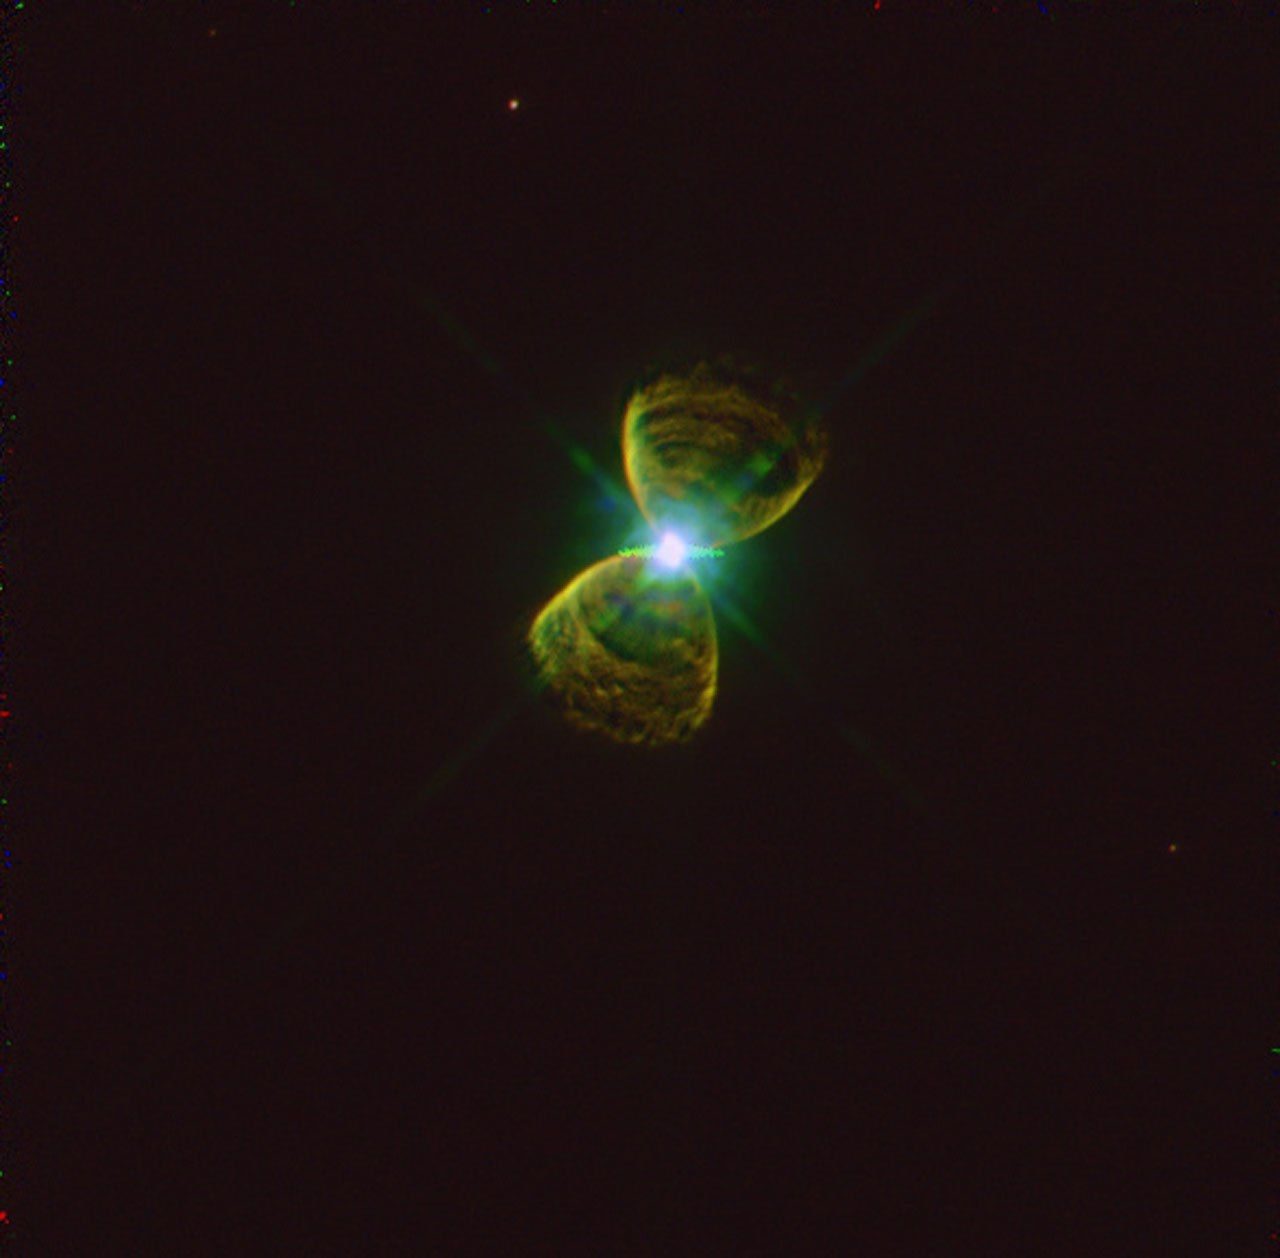 Nébuleuse planétaire PK111-2.1 dans la constellation de Cassiopée